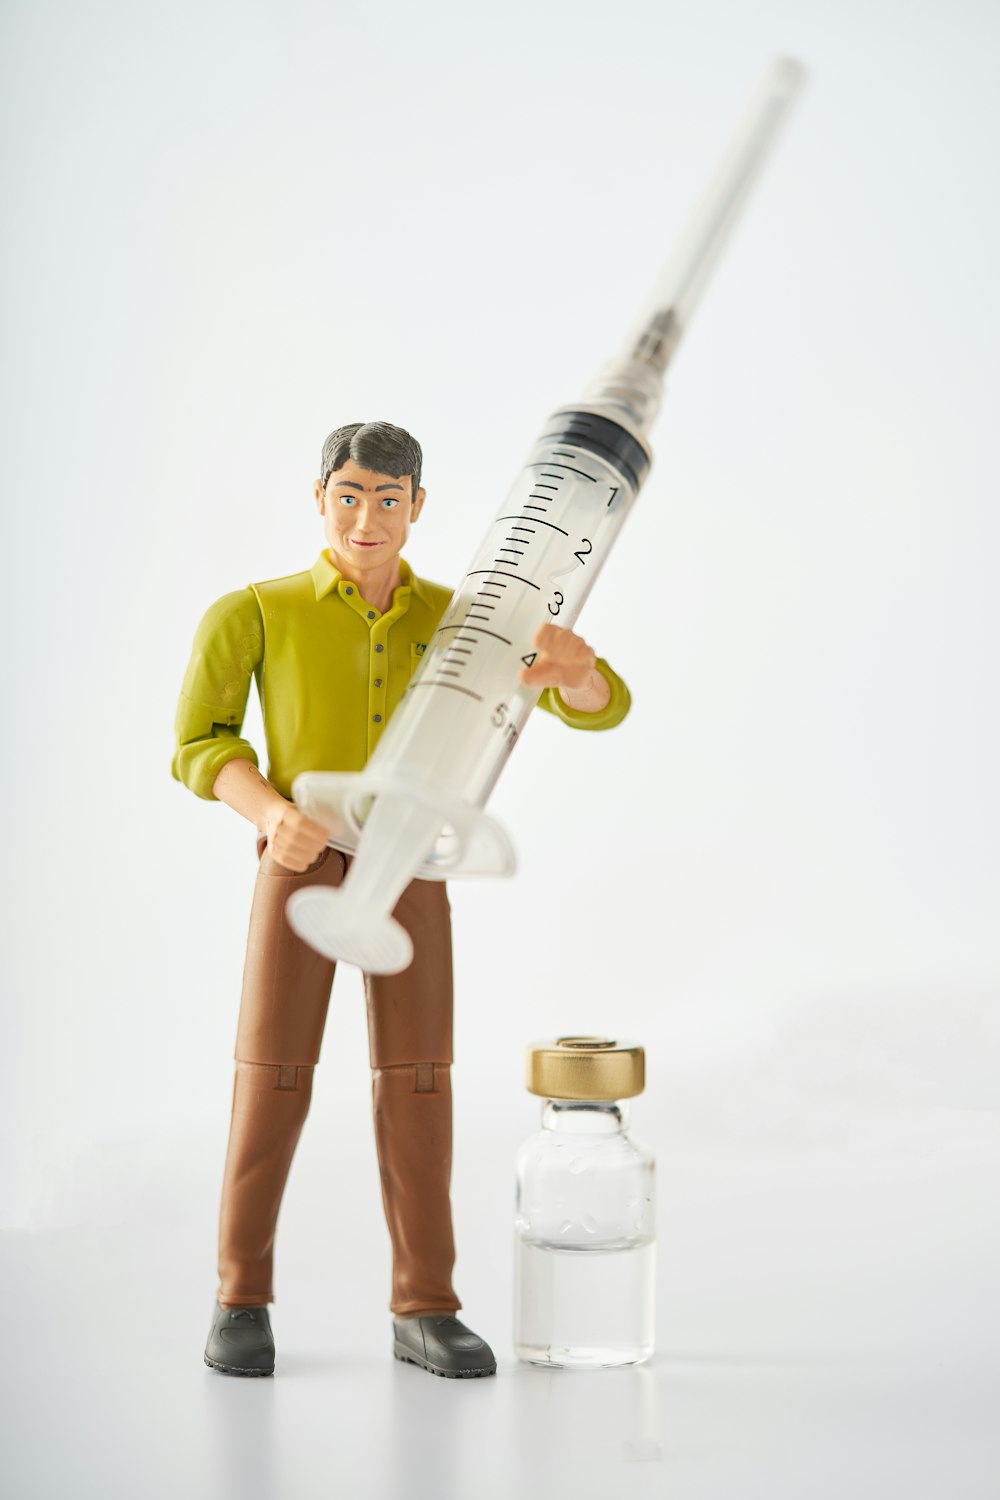 Un homme jouet tenant un syquet à côté d’un flacon de médicament